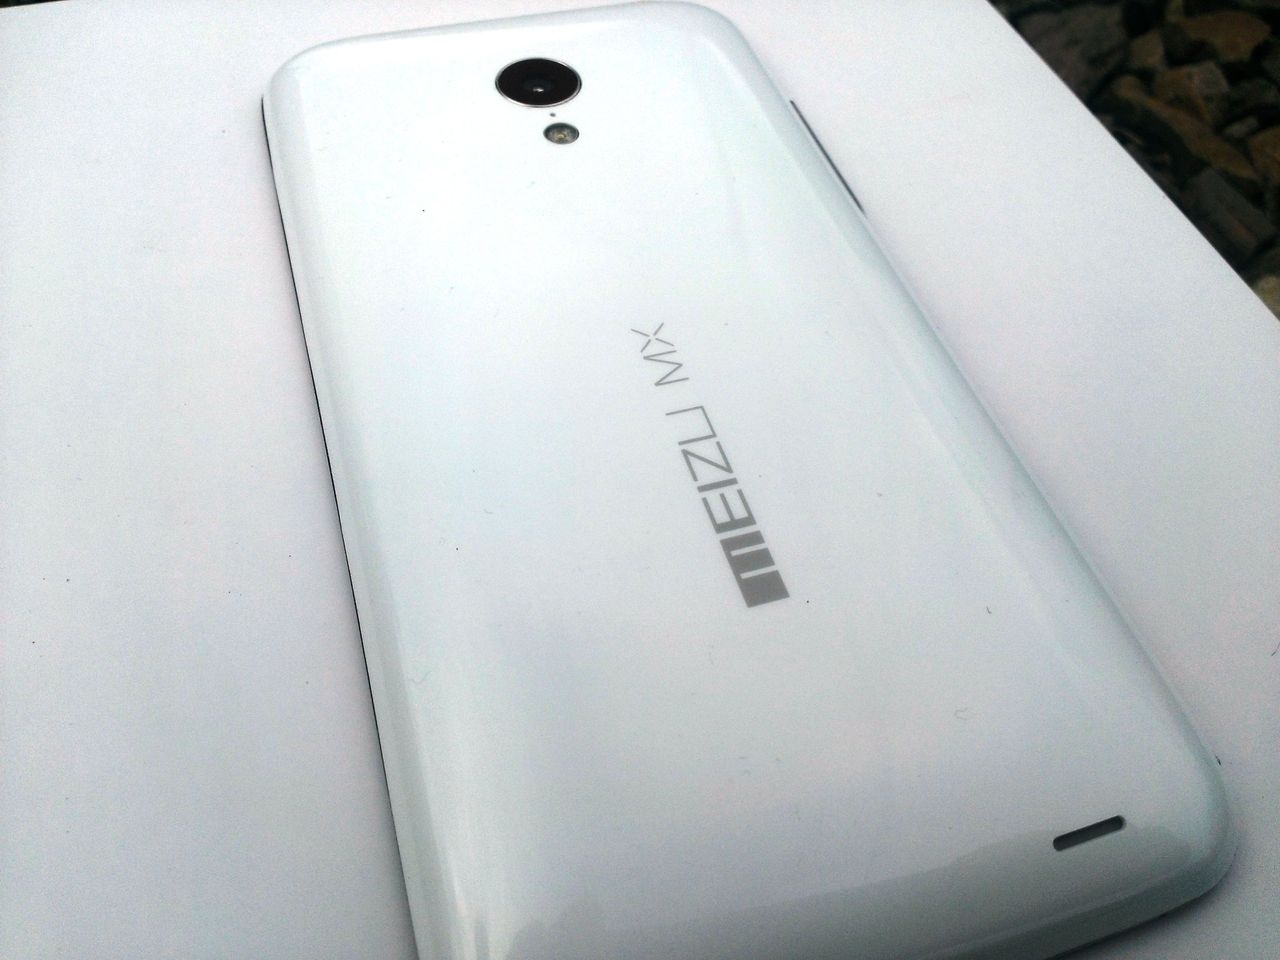 Piękny i potężny Meizu MX3, czyli iPhone z Państwa Środka [pierwsze wrażenia]